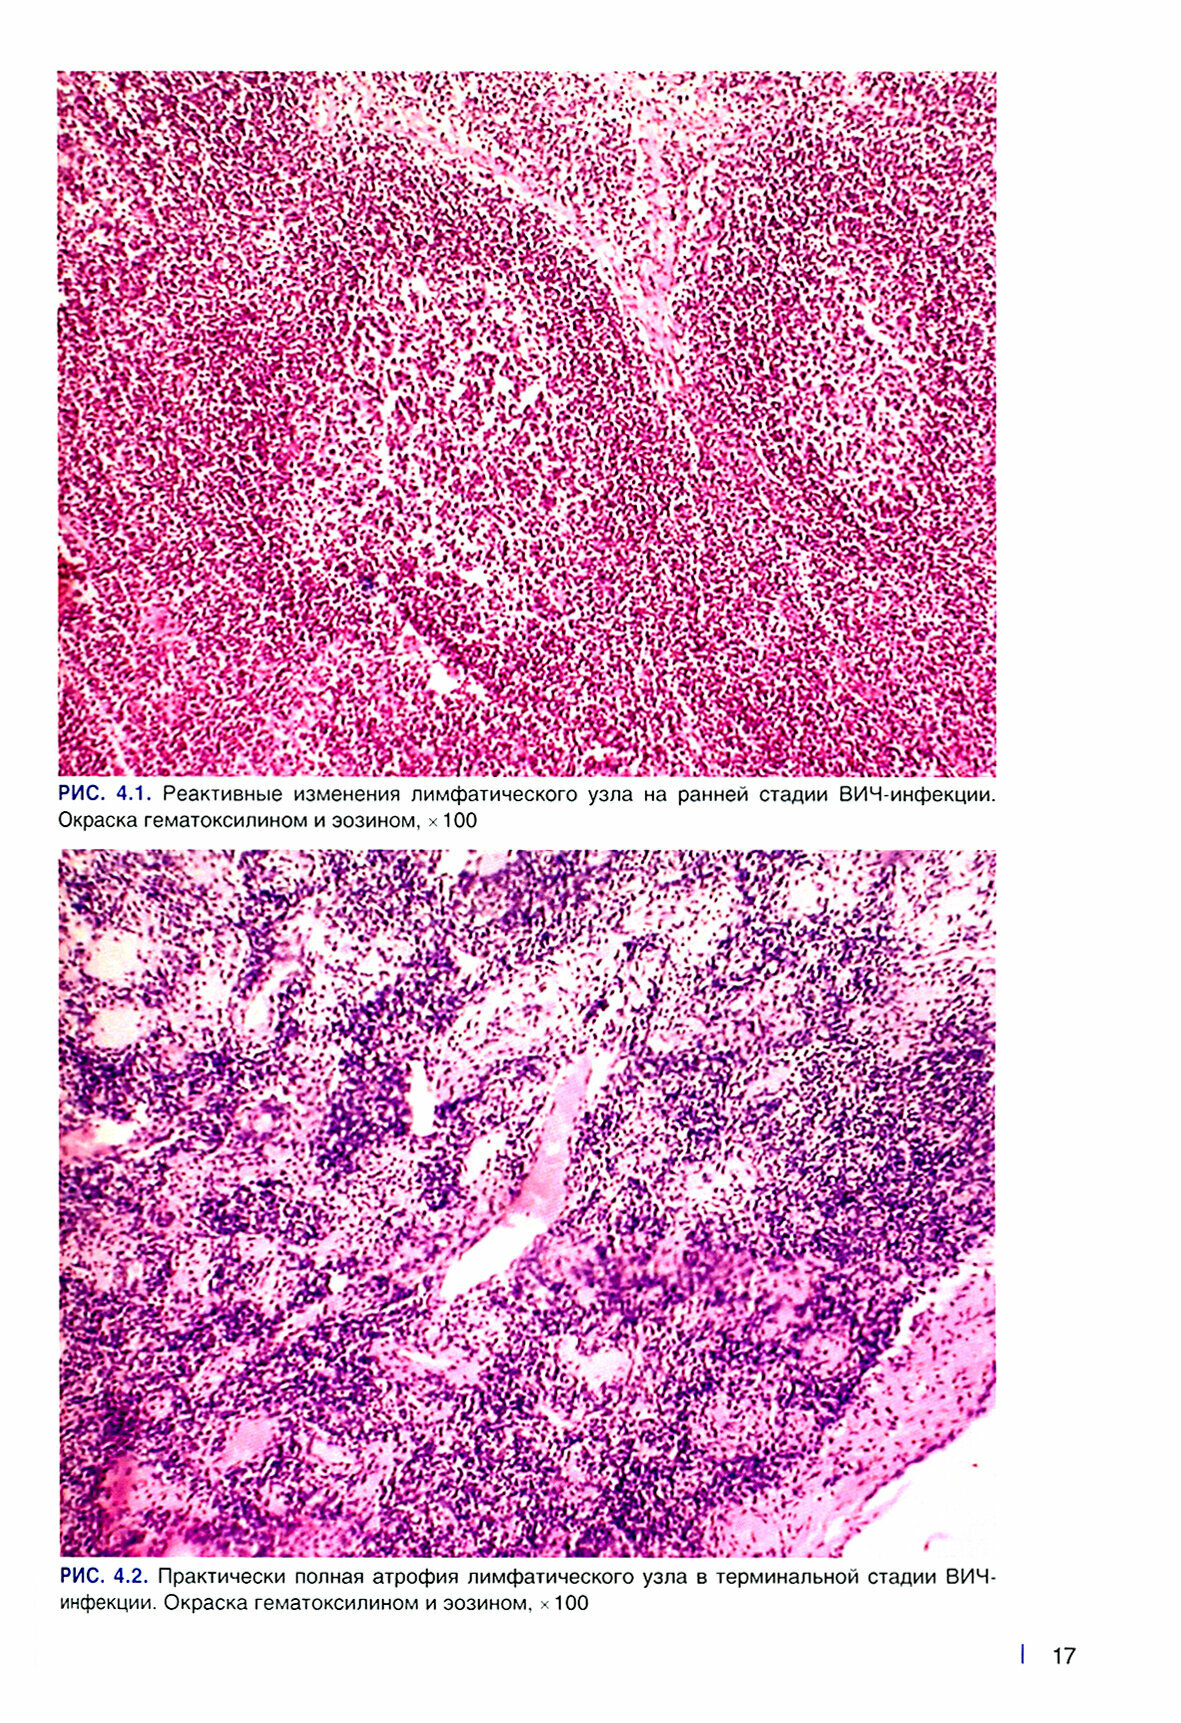 Посмертная и прижизненная патолого-анатомическая диагностика болезни, вызванной ВИЧ (ВИЧ-инфекции) - фото №3